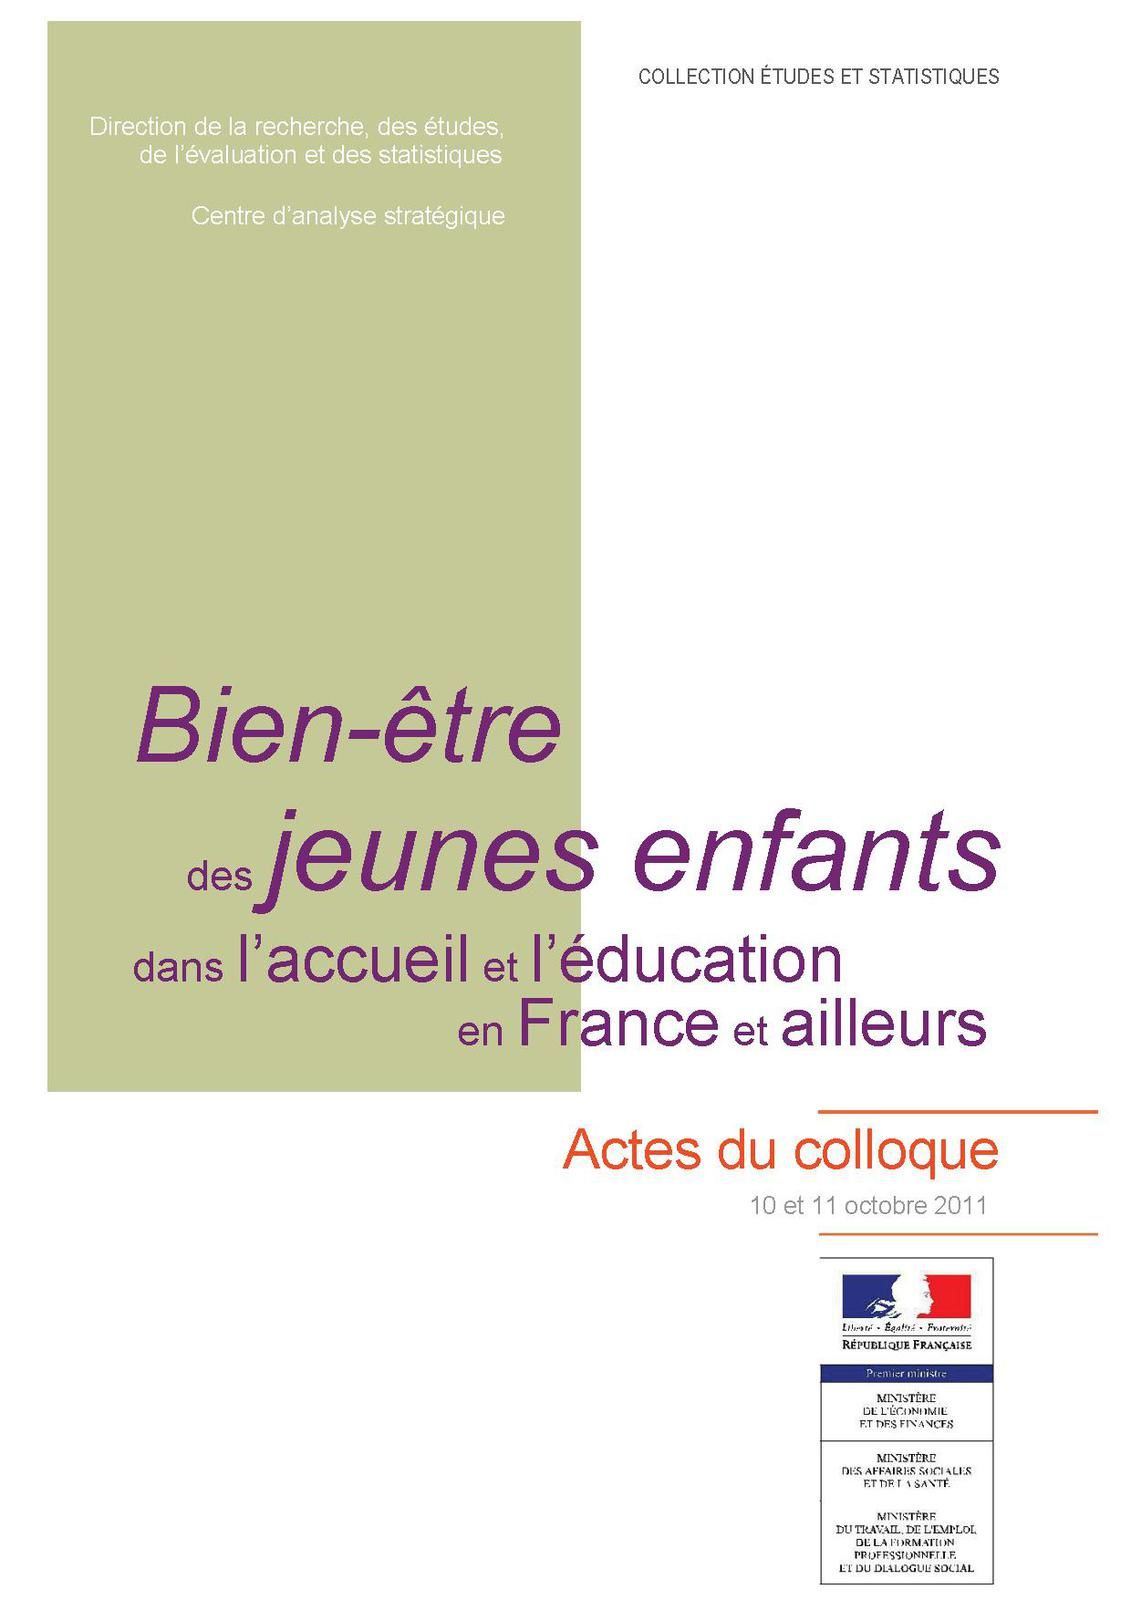 Bien-être des jeunes enfants dans l’accueil et l’éducation en France et ailleurs -  Actes du colloque - 10 et 11 octobre 2011